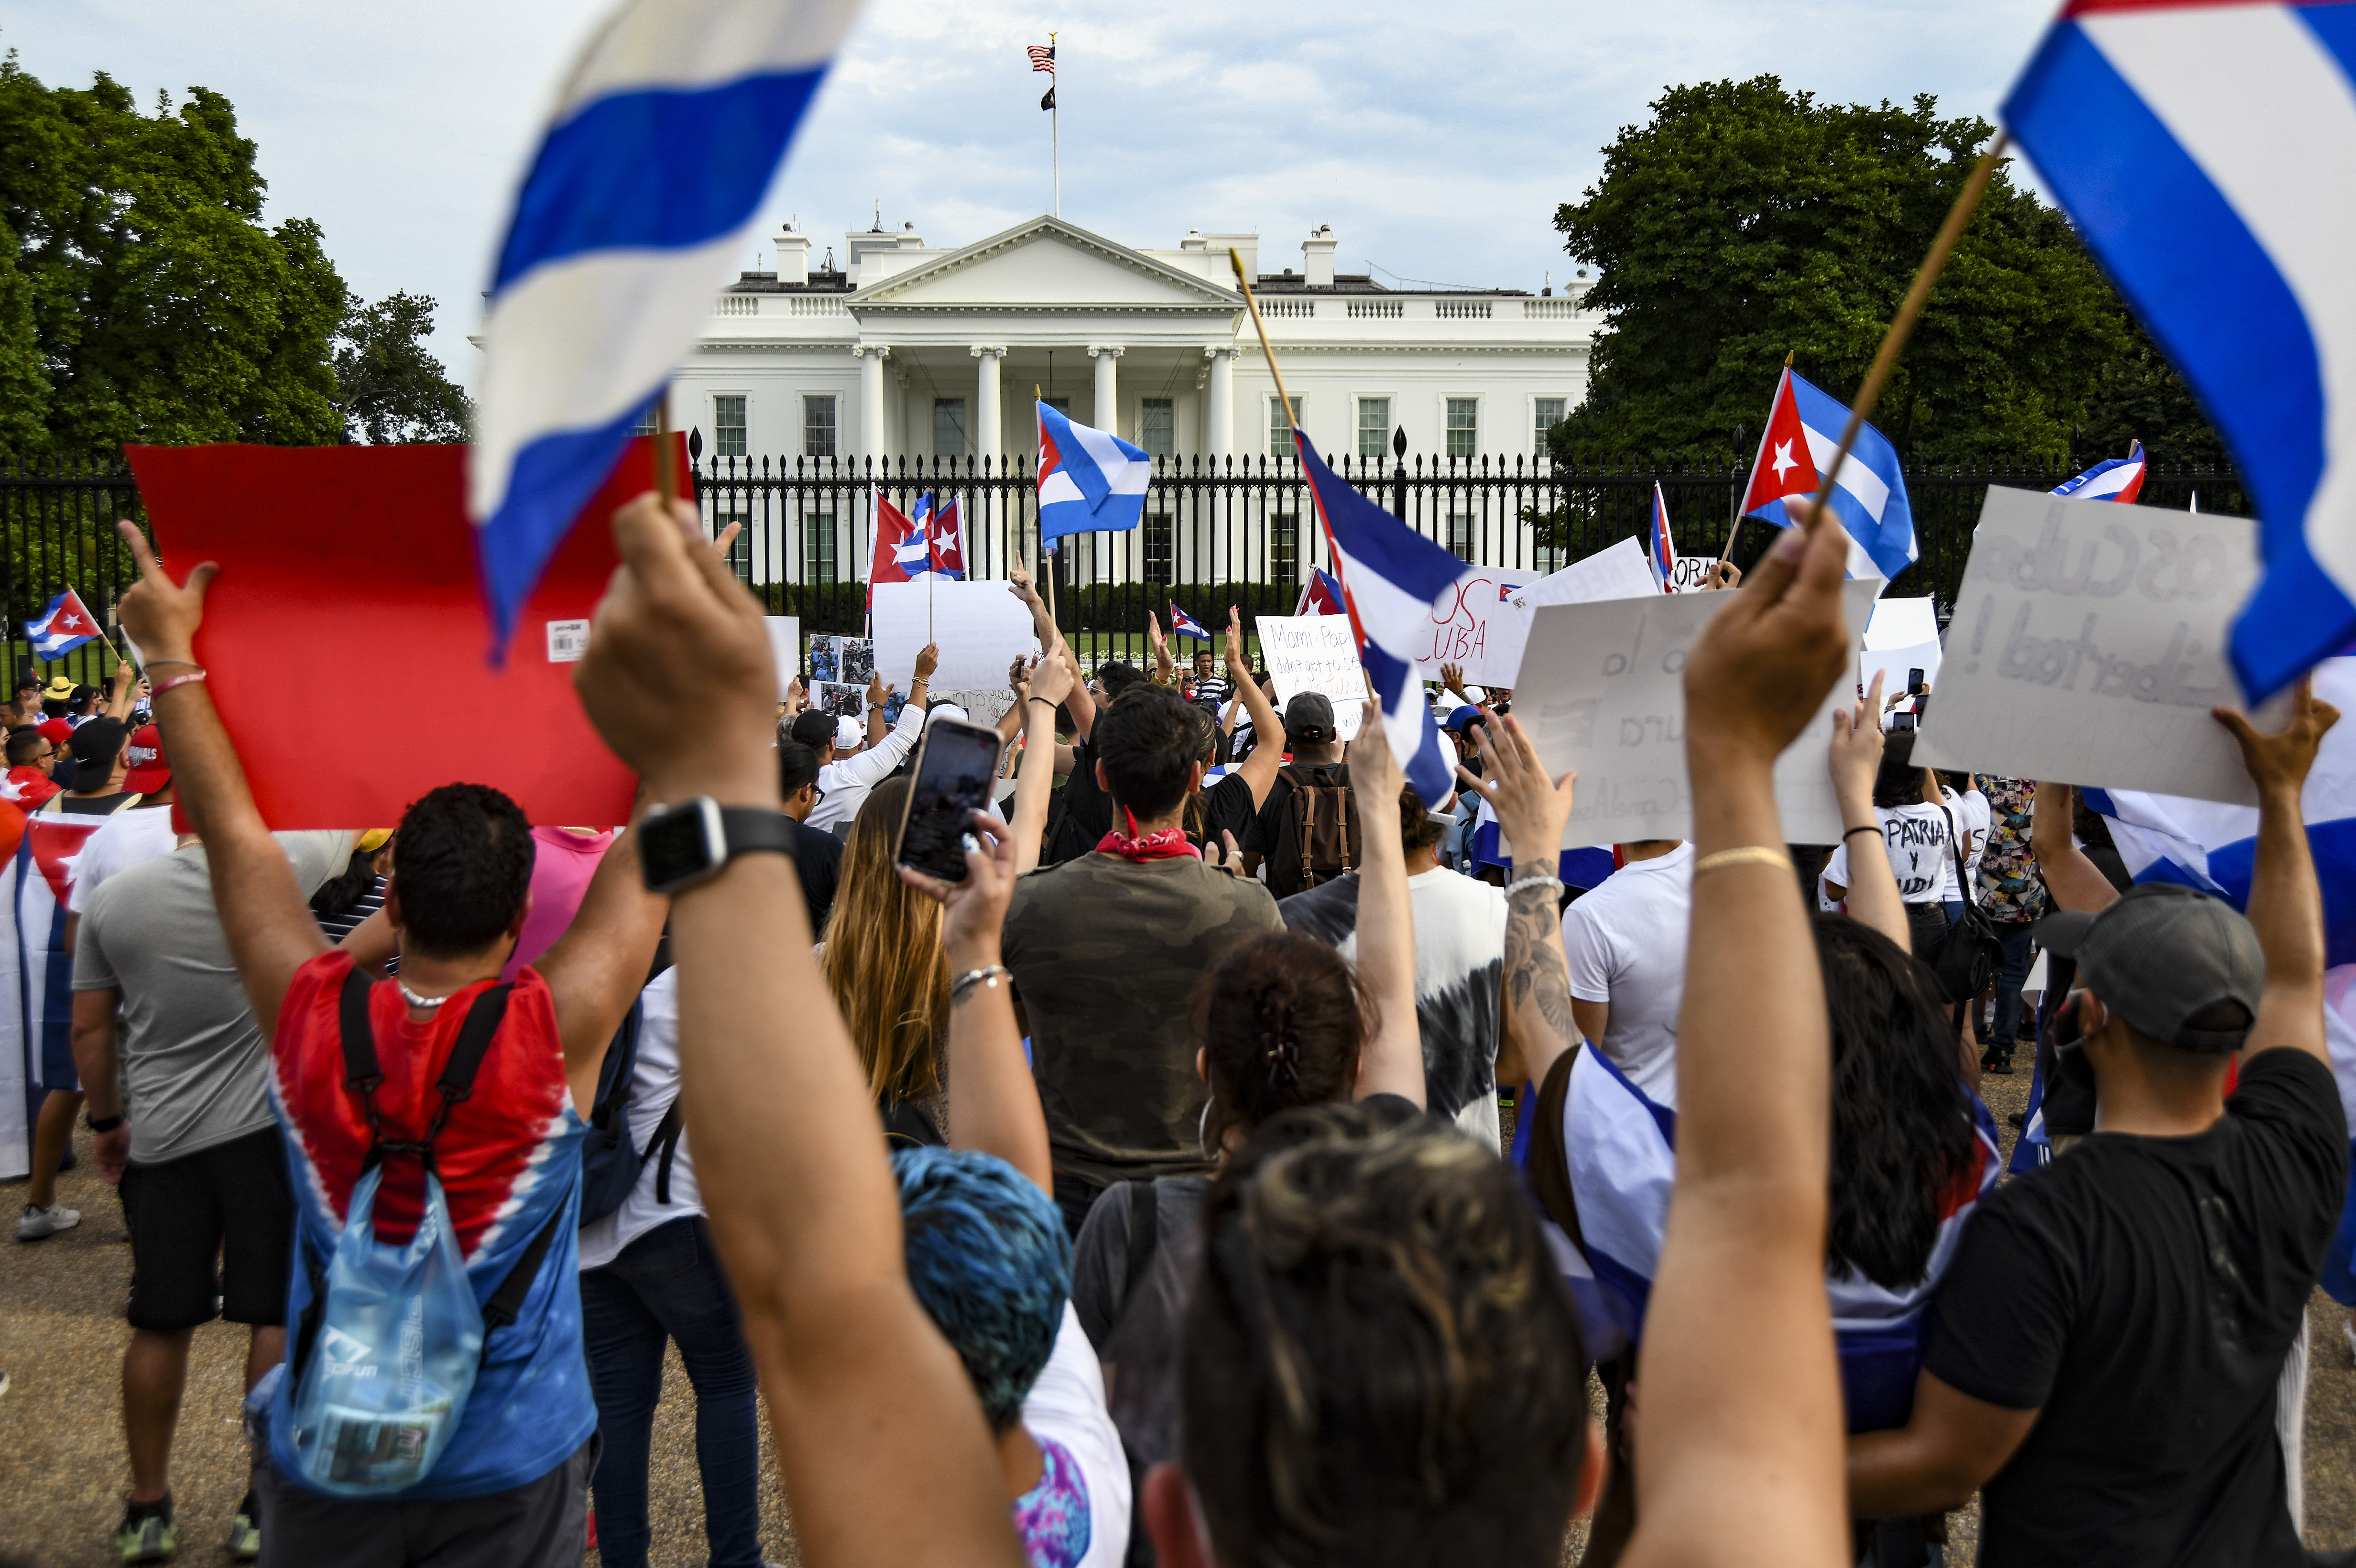 Protesta contra el gobierno cubano realizada frente a la Casa Blanca, el mes pasado. (Foto Prensa Libre: Kenny Holston para The New York Times)